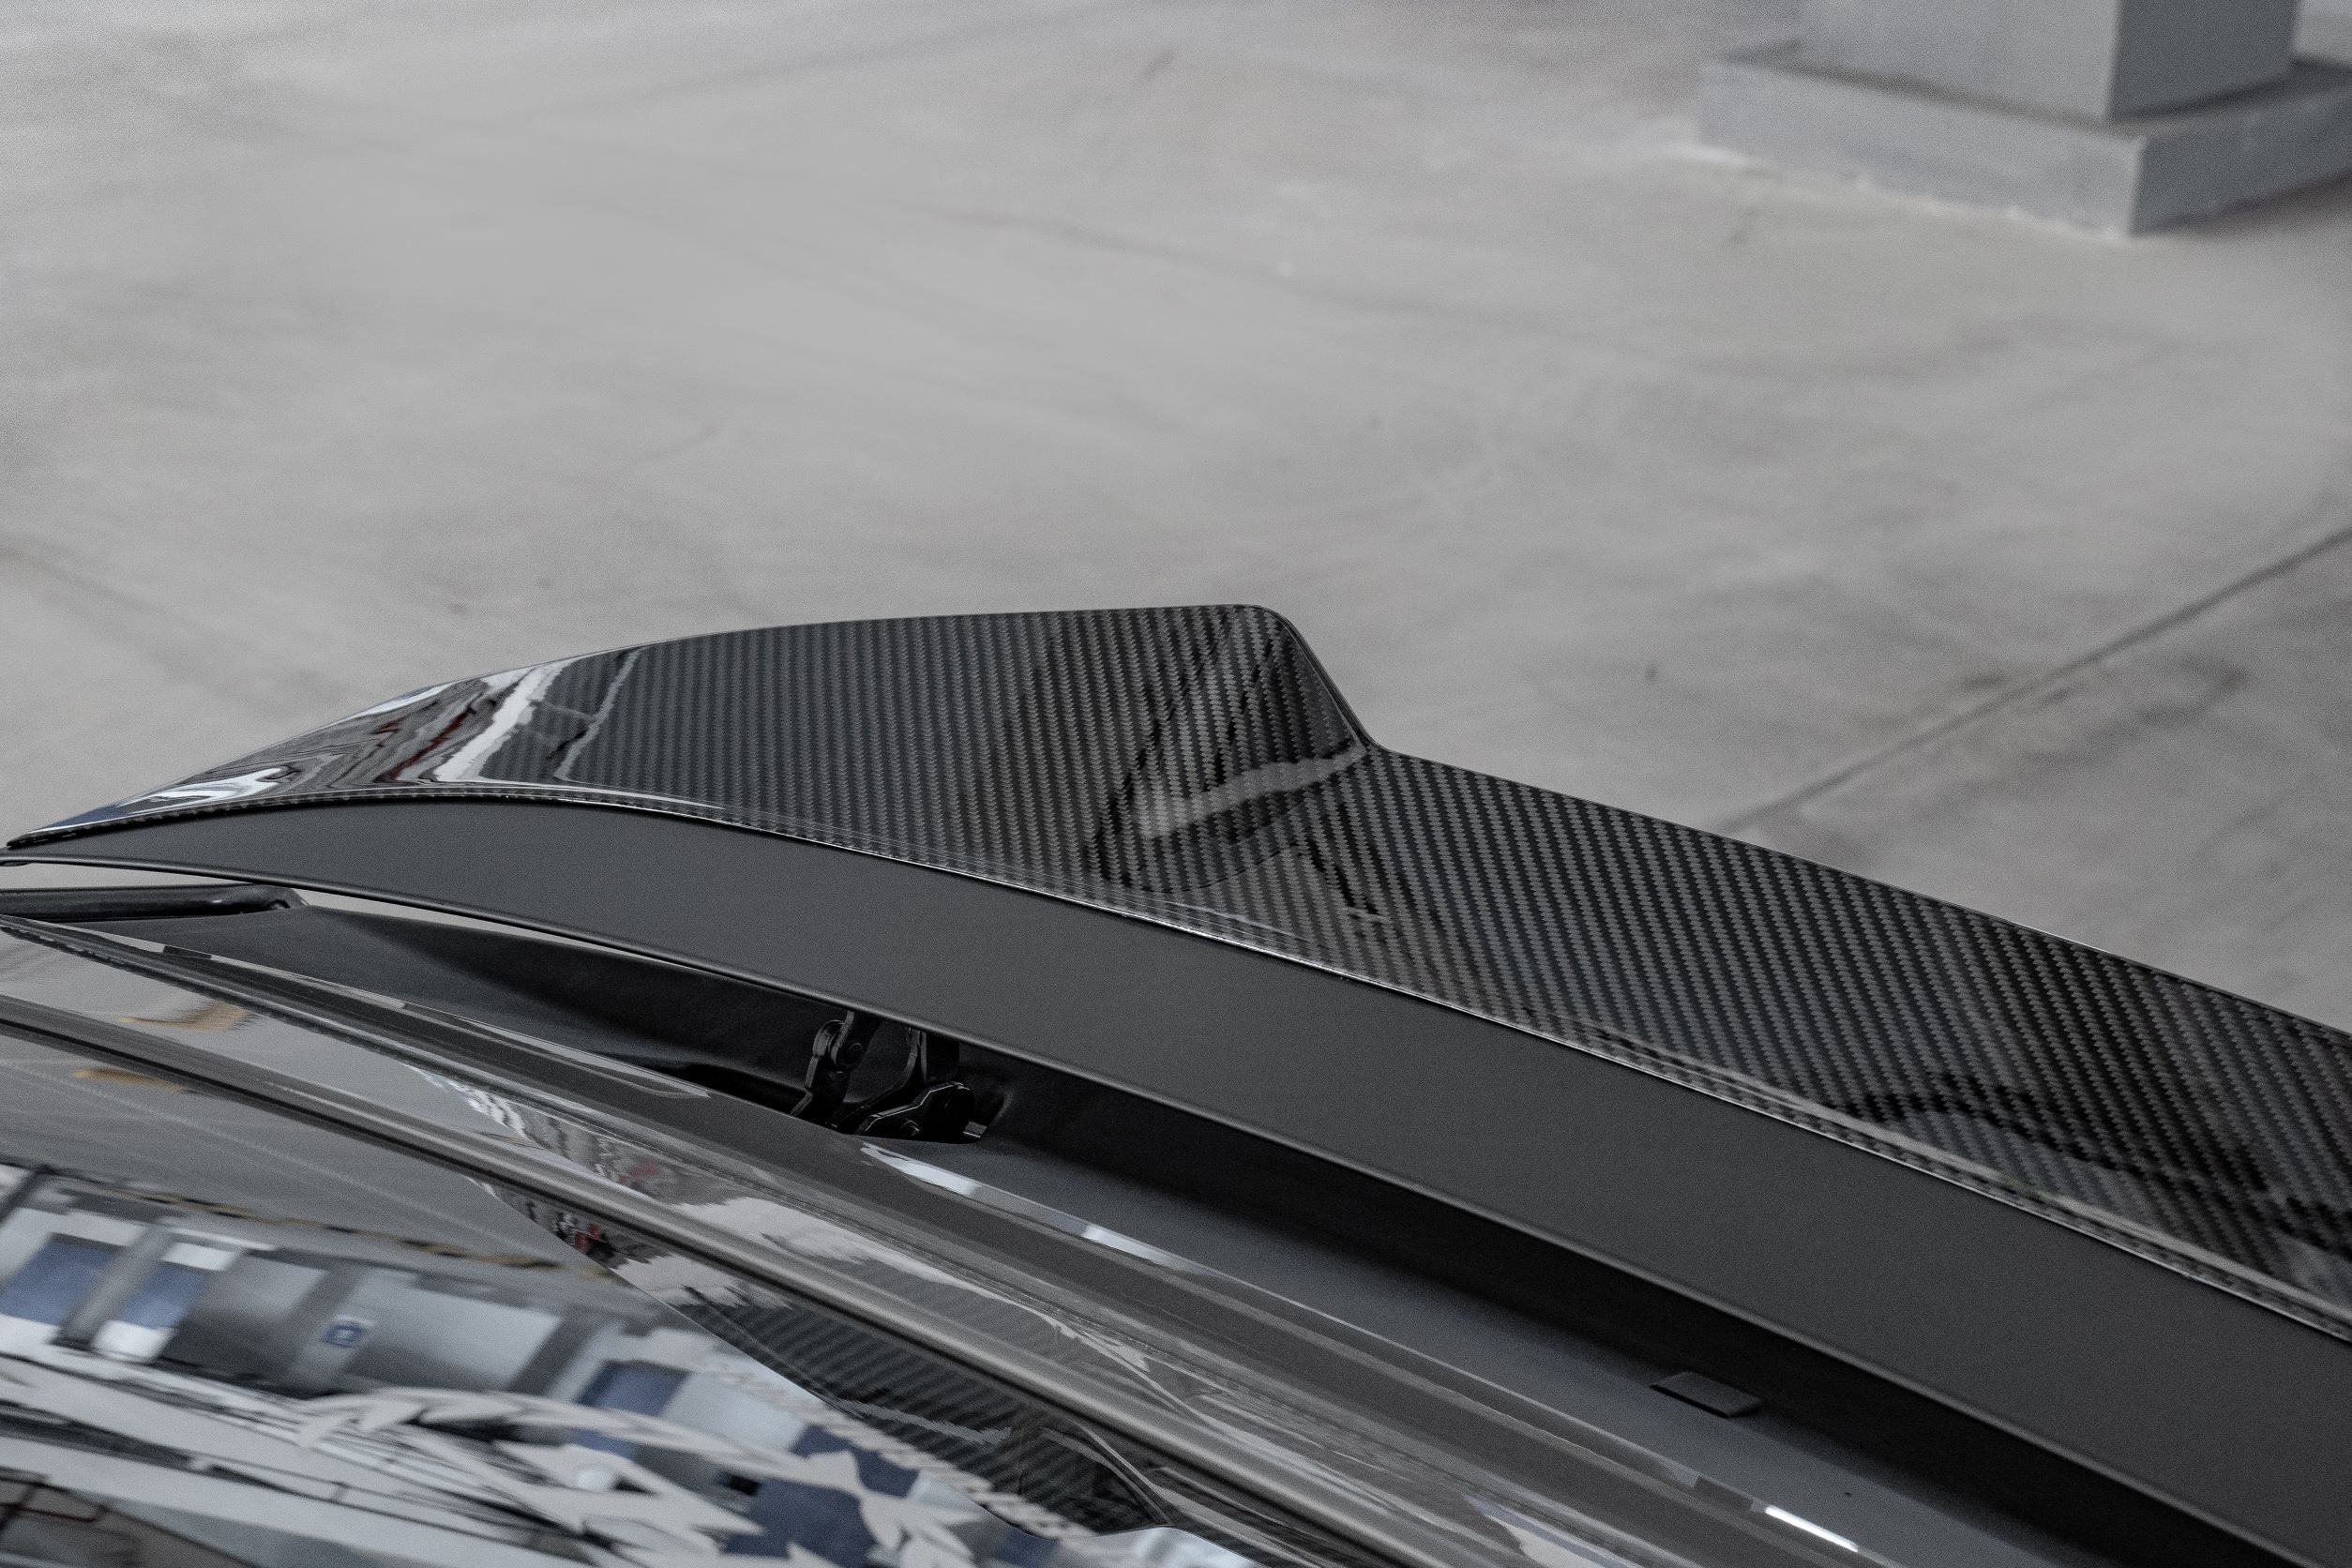 Karbel Carbon Dry Carbon Fiber Rear Spoiler Ver.2 for Audi RS7 S7 A7 2019-ON C8